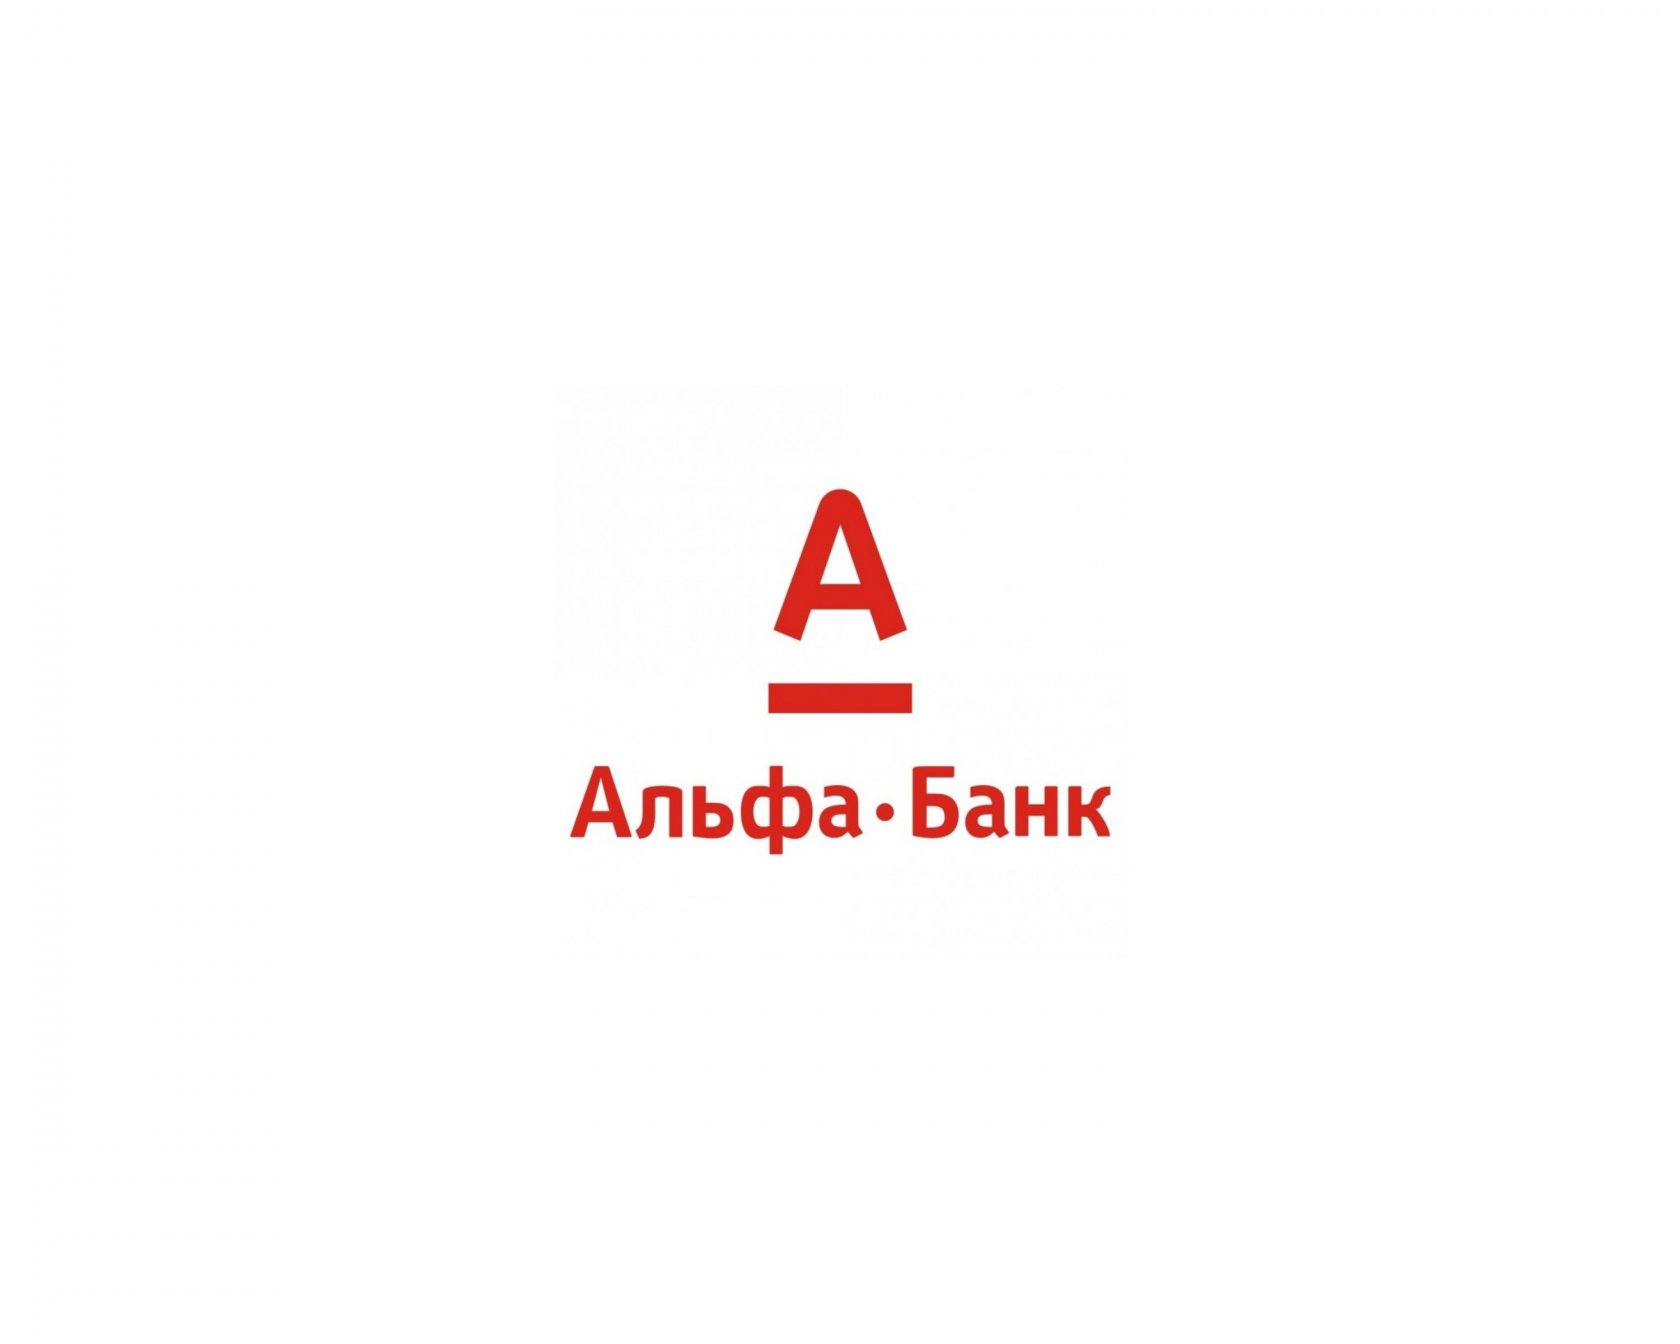 Альфа банк шуя. Эмблема Альфа банка. Альфа банк логотип на белом фоне. Алеф банк. Альфа банк иллюстрации.